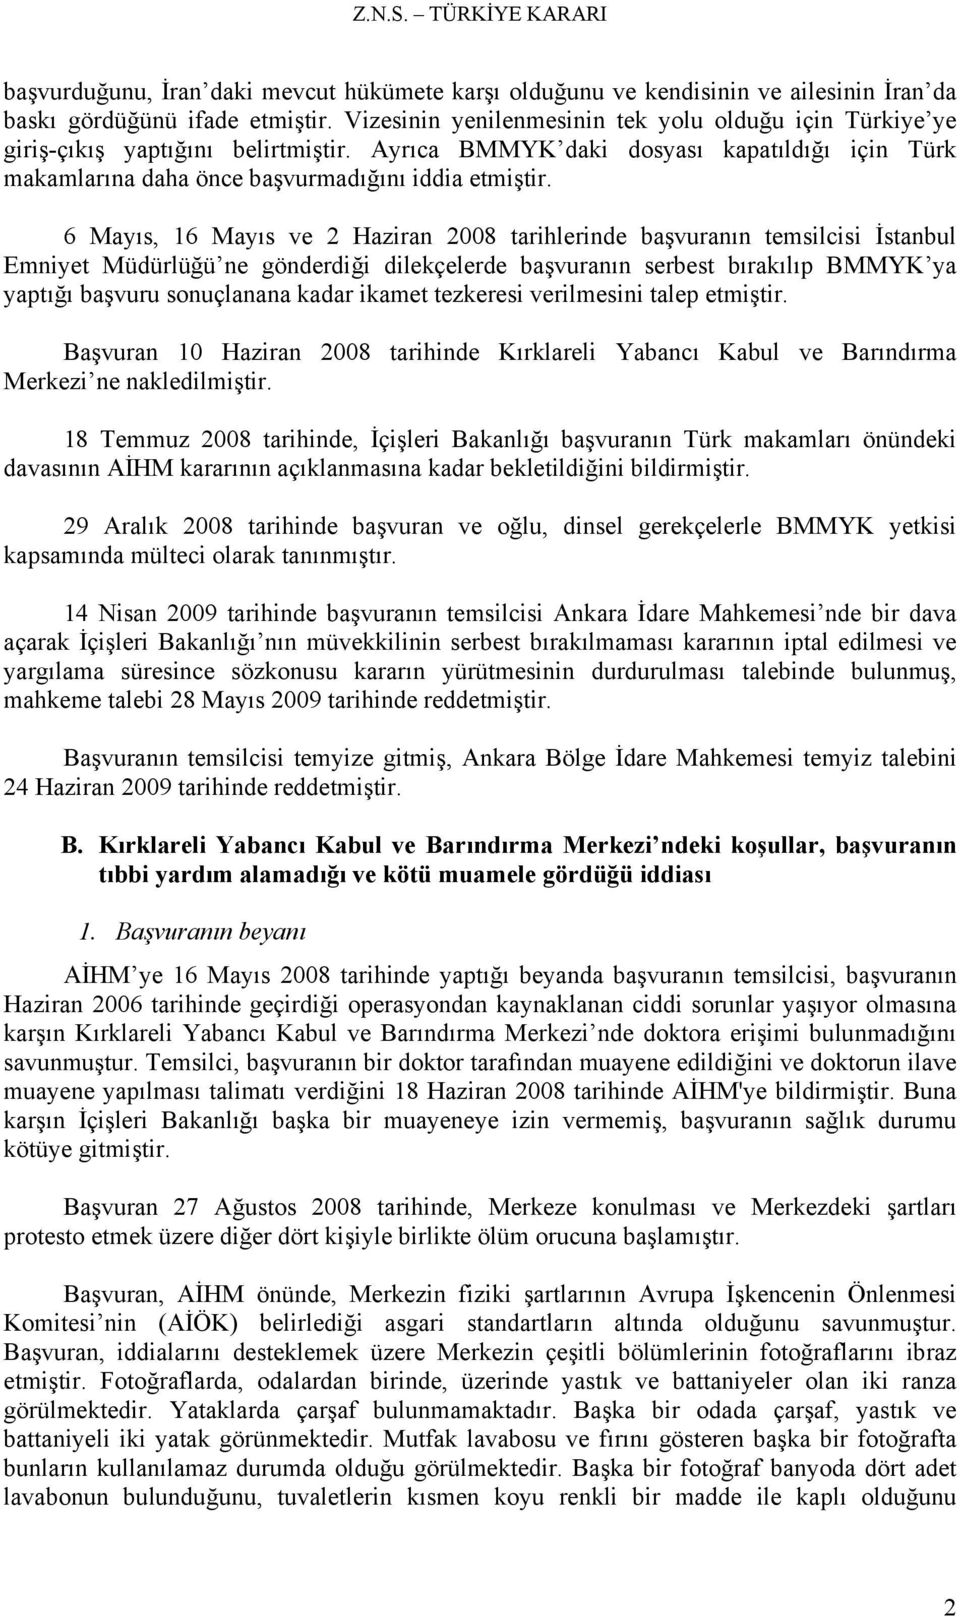 6 Mayıs, 16 Mayıs ve 2 Haziran 2008 tarihlerinde başvuranın temsilcisi İstanbul Emniyet Müdürlüğü ne gönderdiği dilekçelerde başvuranın serbest bırakılıp BMMYK ya yaptığı başvuru sonuçlanana kadar